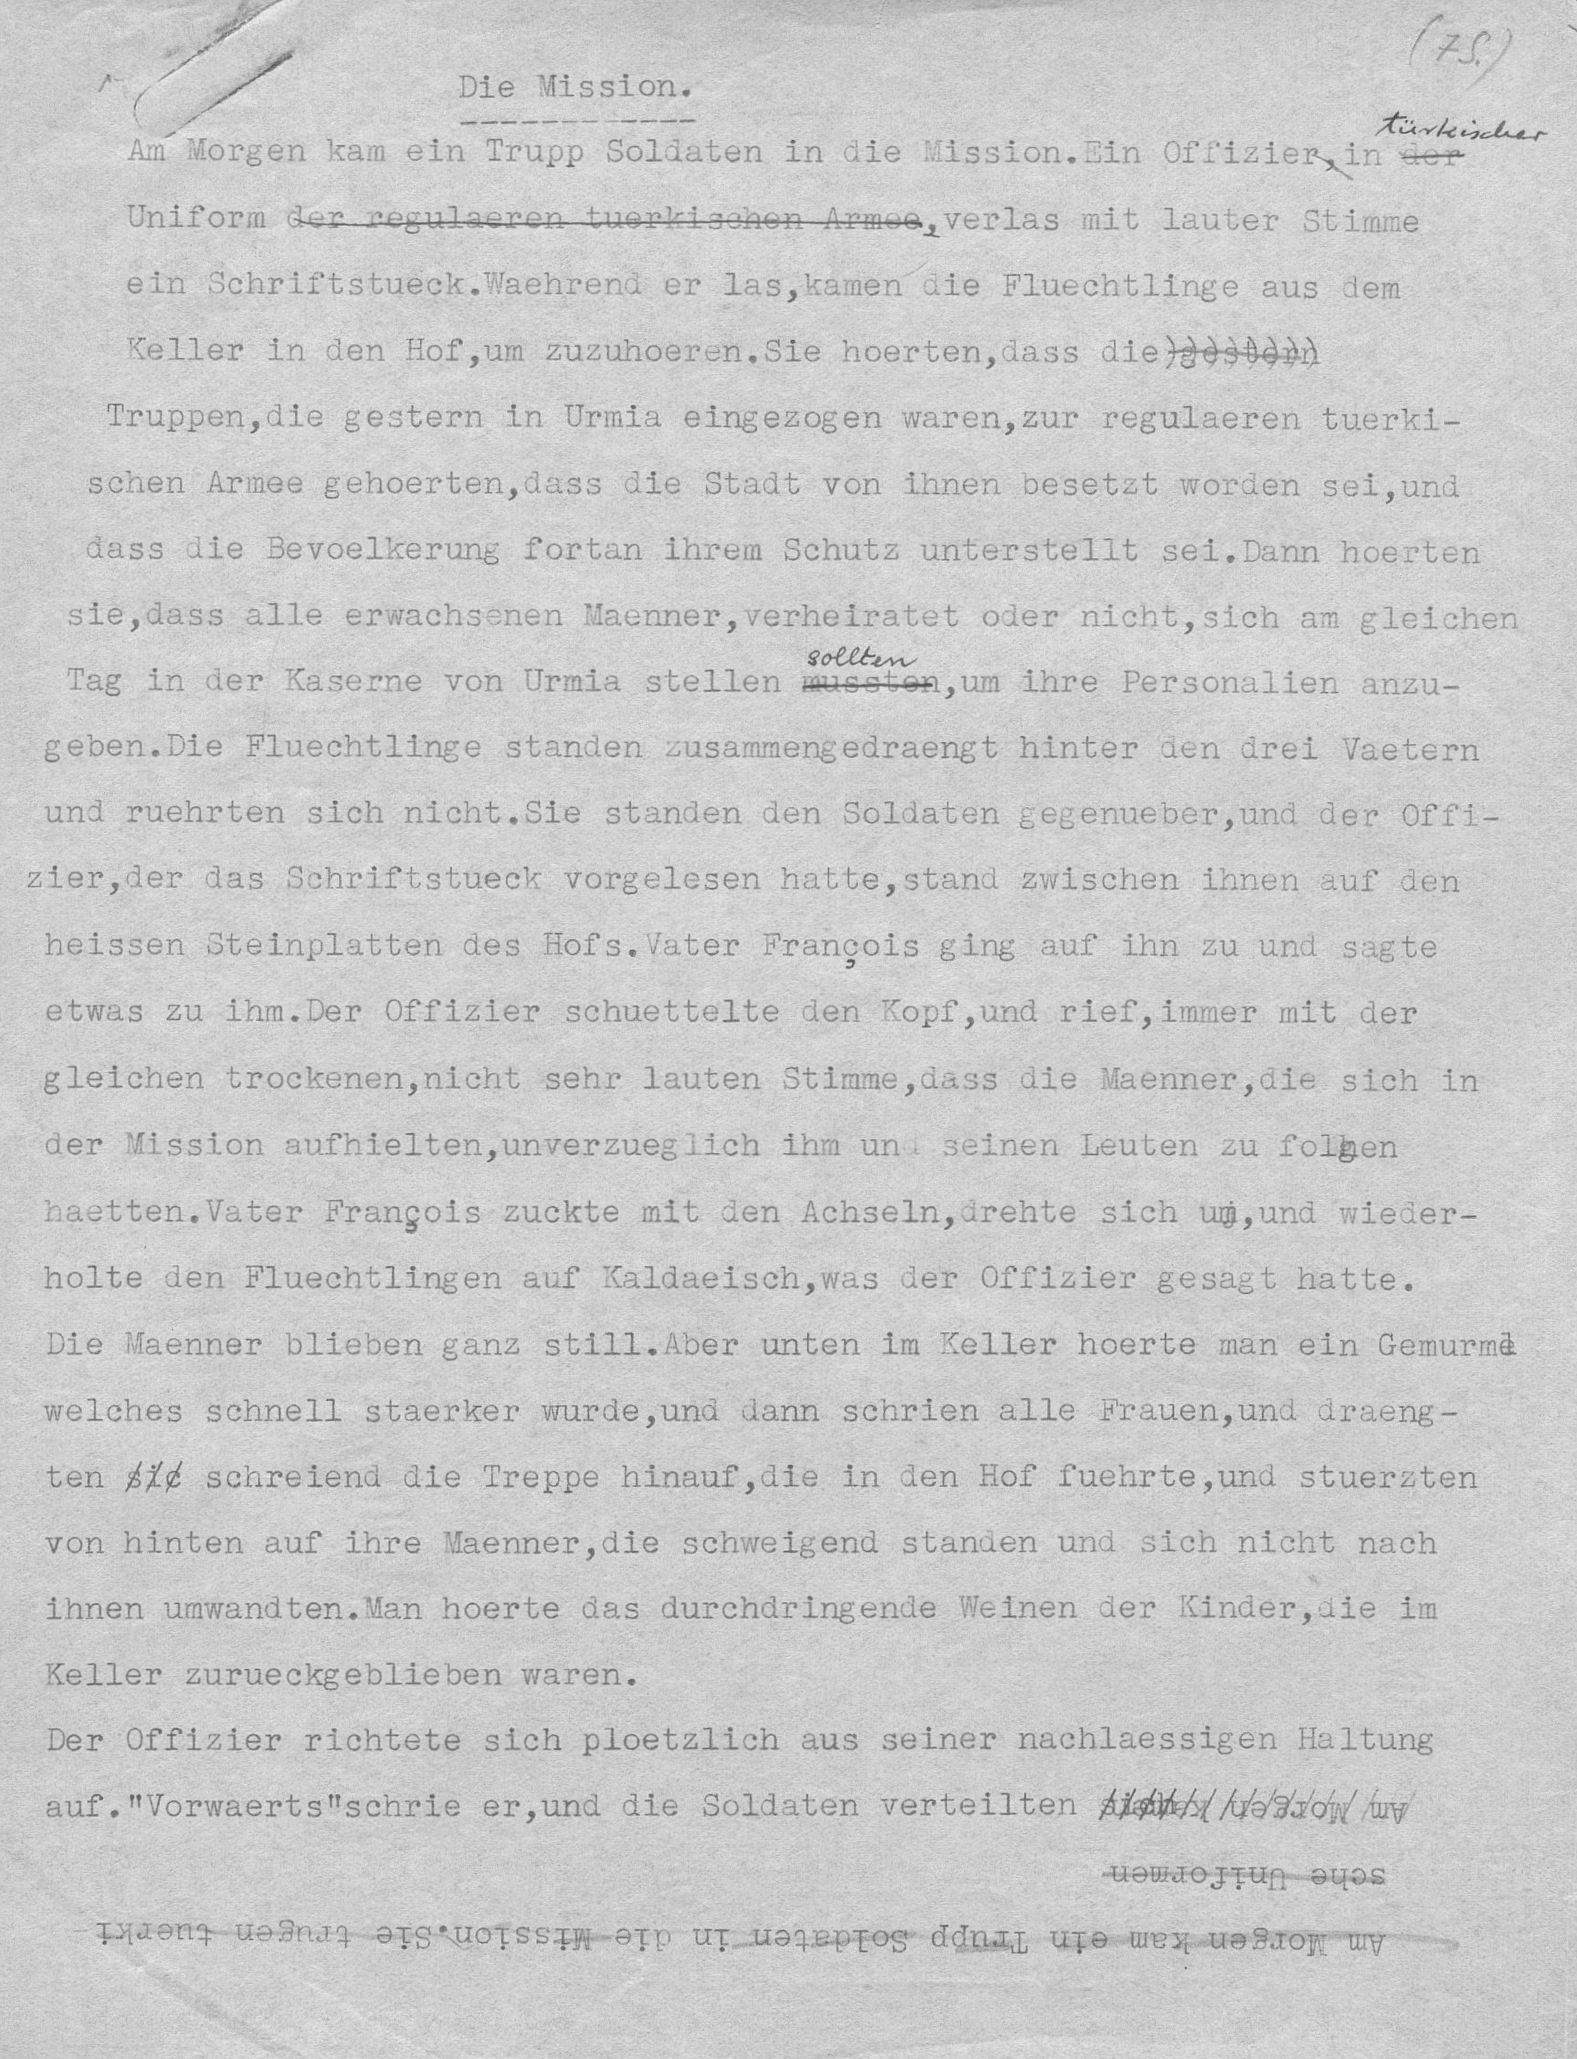 Die Mission (ca. August 1935), Schweizerisches Literaturarchiv, Nachlass Annemarie Schwarzenbach A-1/047.